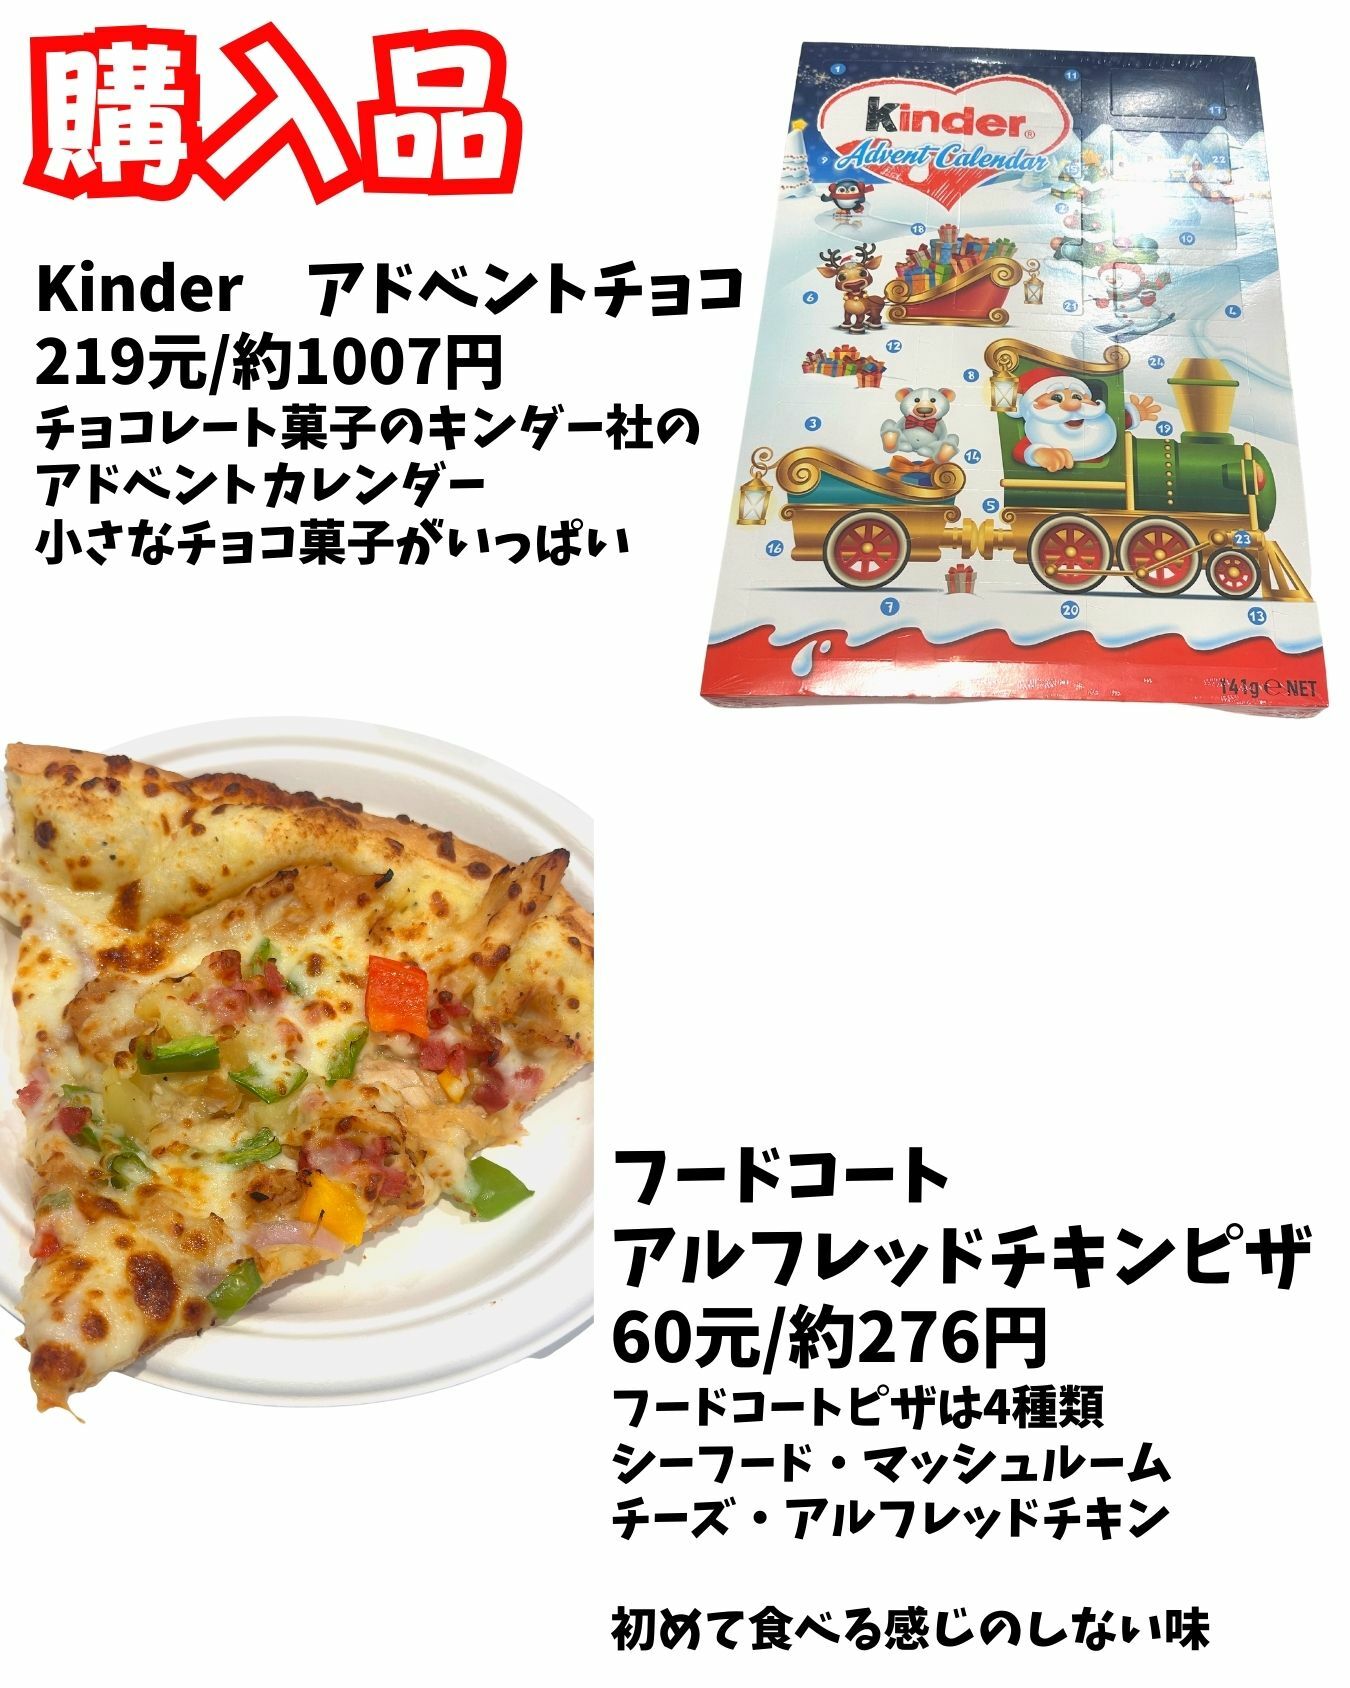 台湾コストコのフードコートのピザはアルフレッドチキンピザ